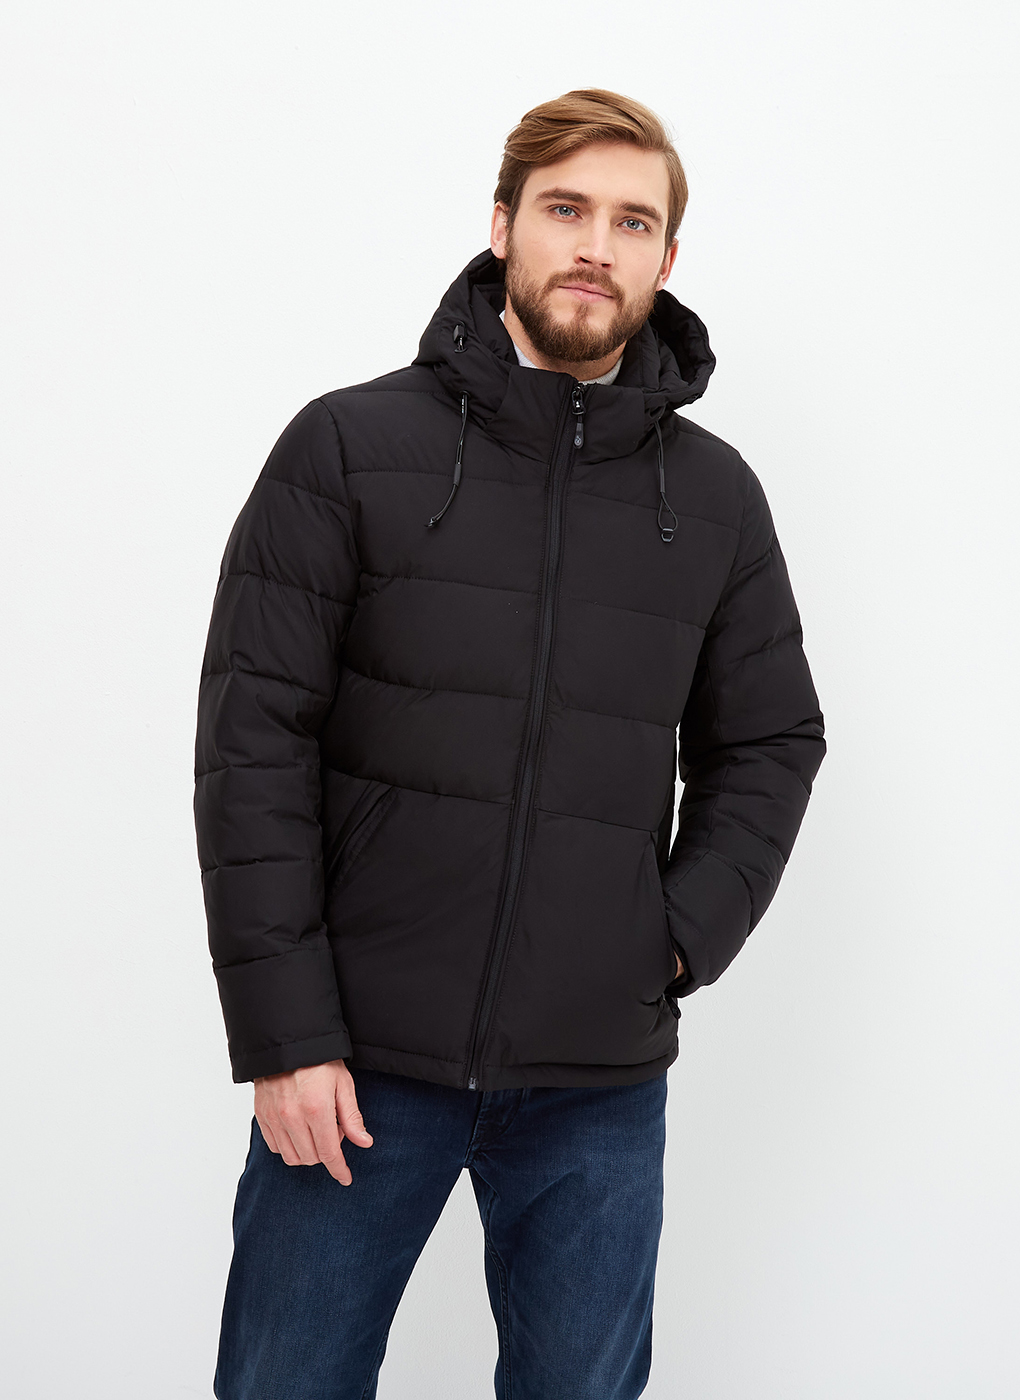 Зимняя куртка мужская Grizman 65178 черная 48 RU